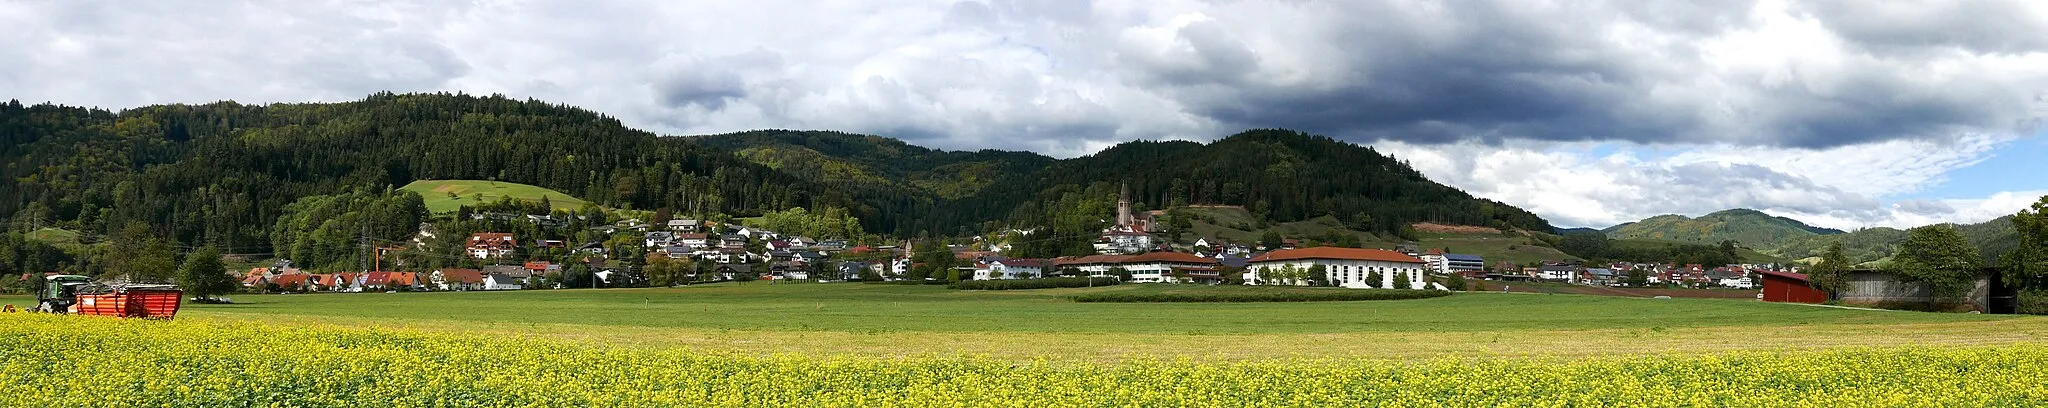 Zdjęcie: Freiburg